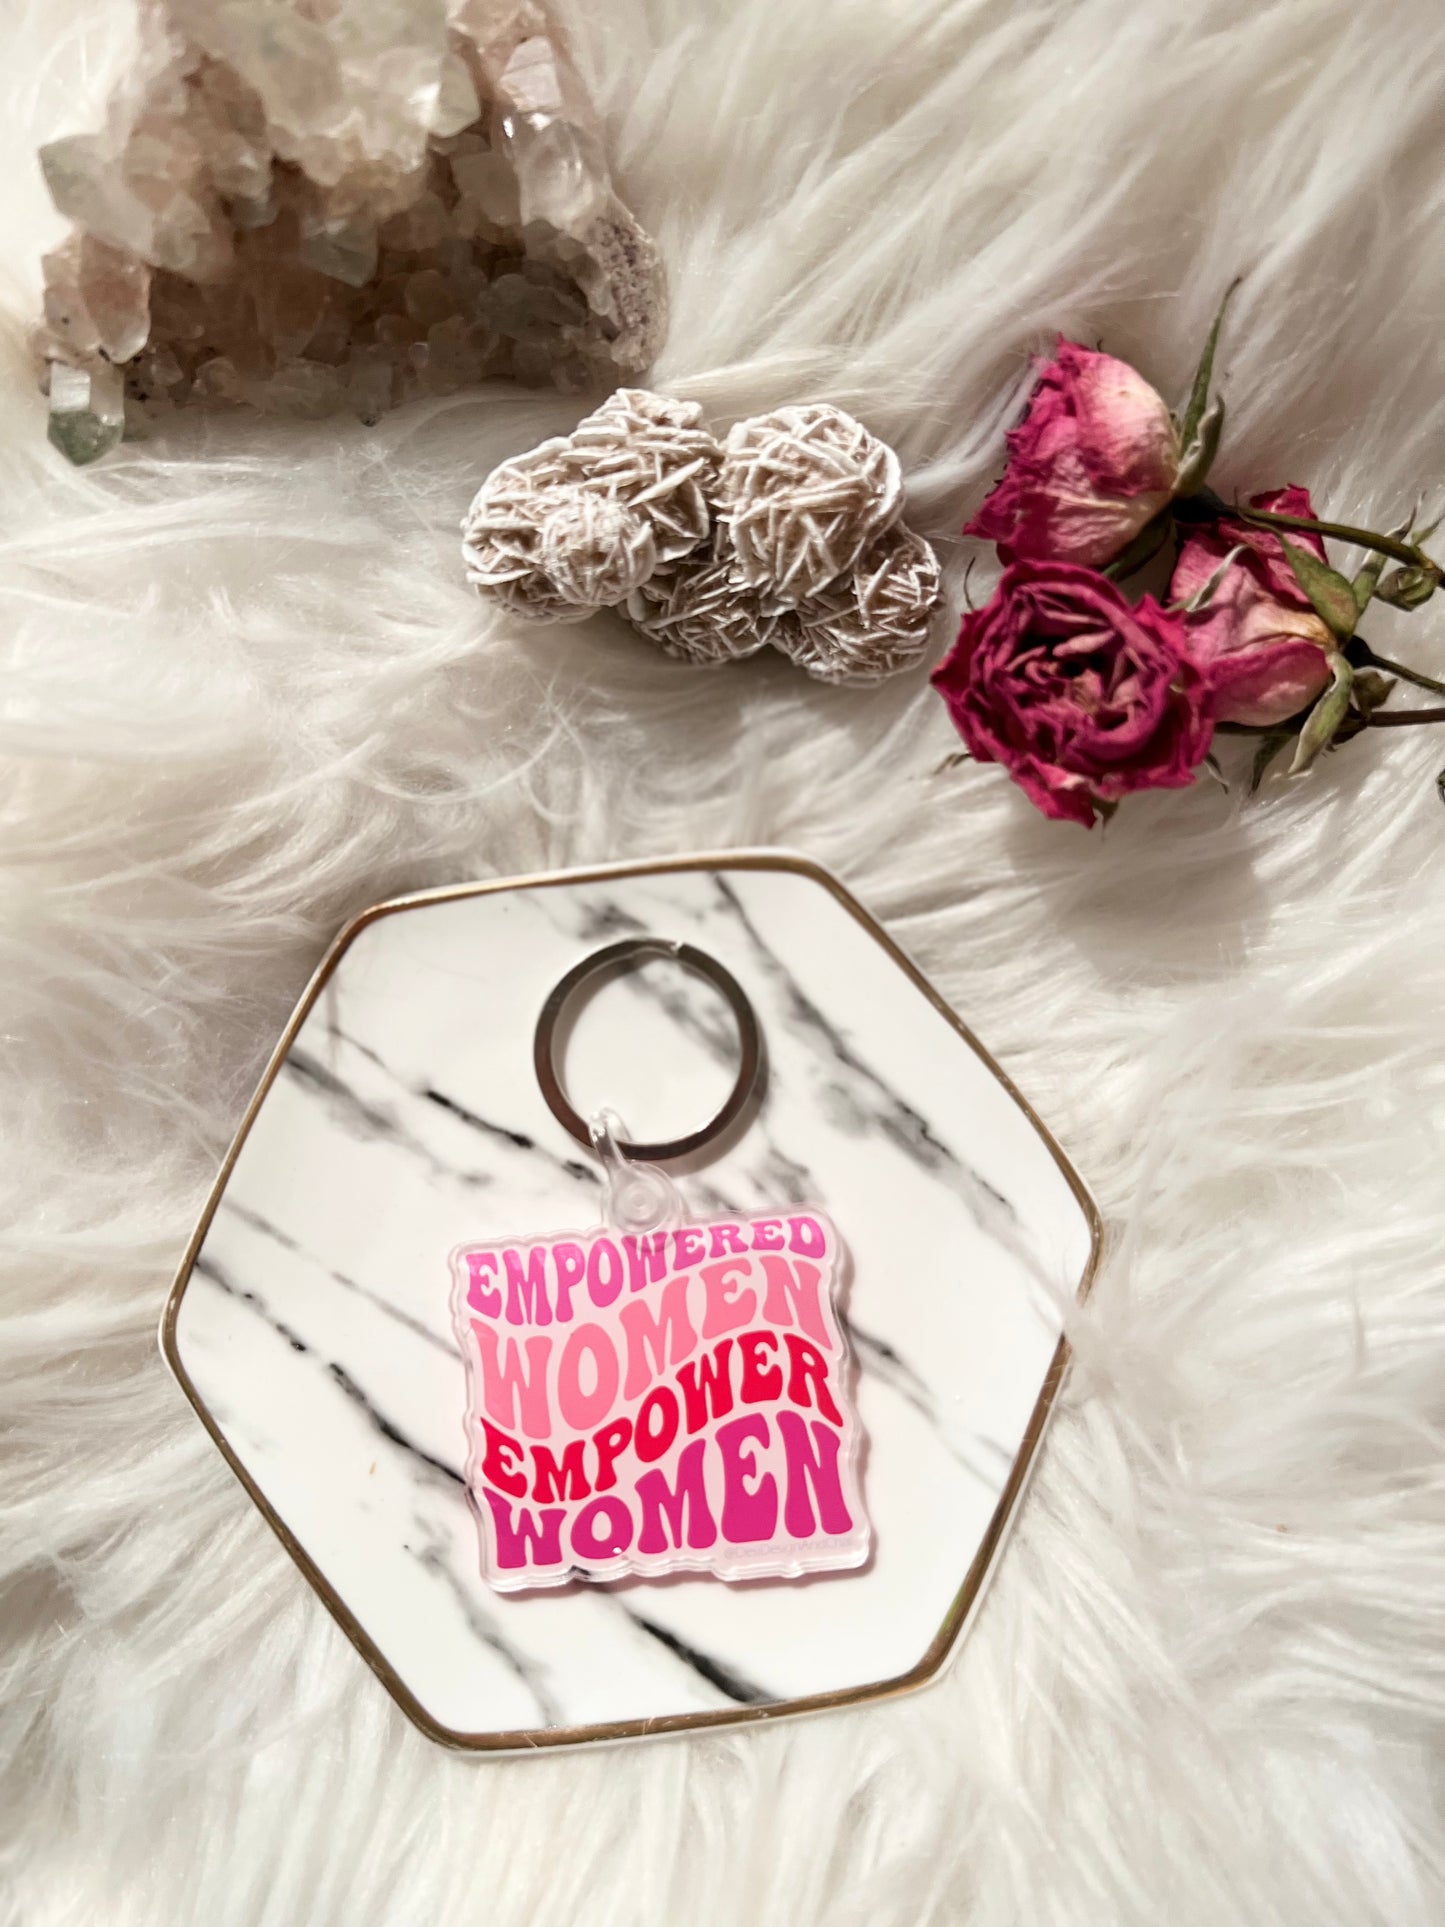 Empowered women empower women keychains